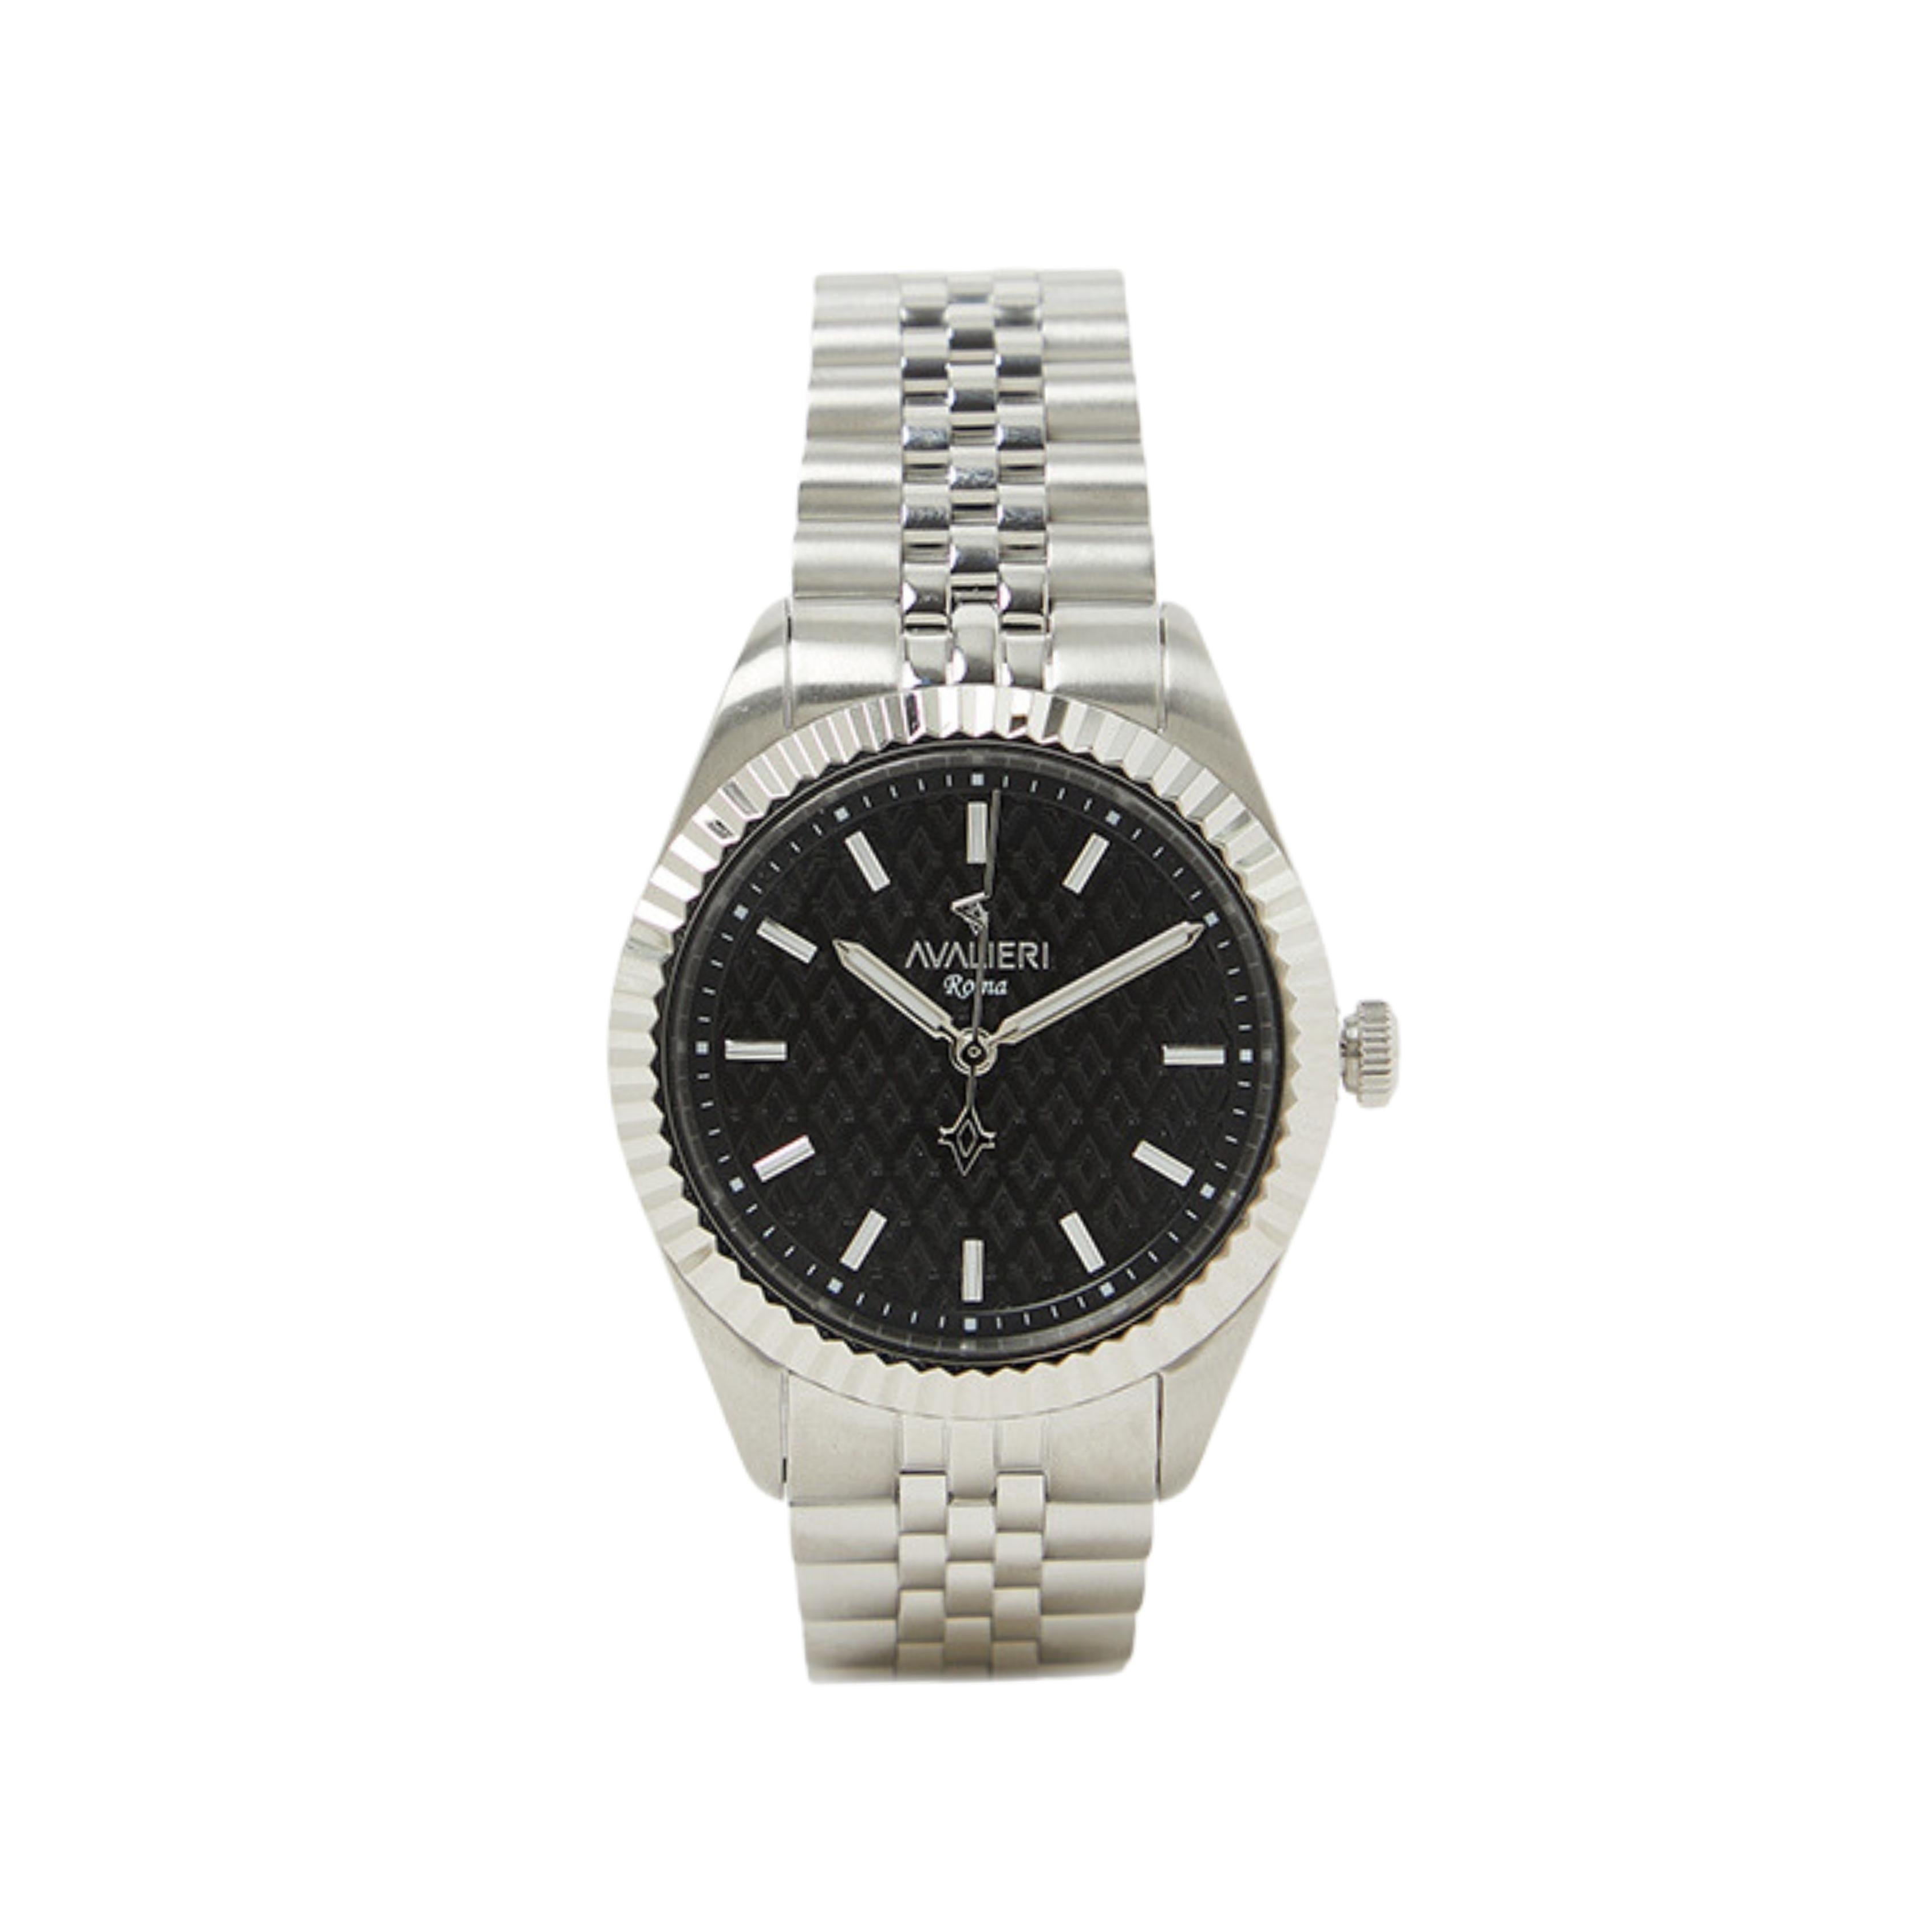 Avalieri Men's Quartz Black Dial Watch - AV-2602B